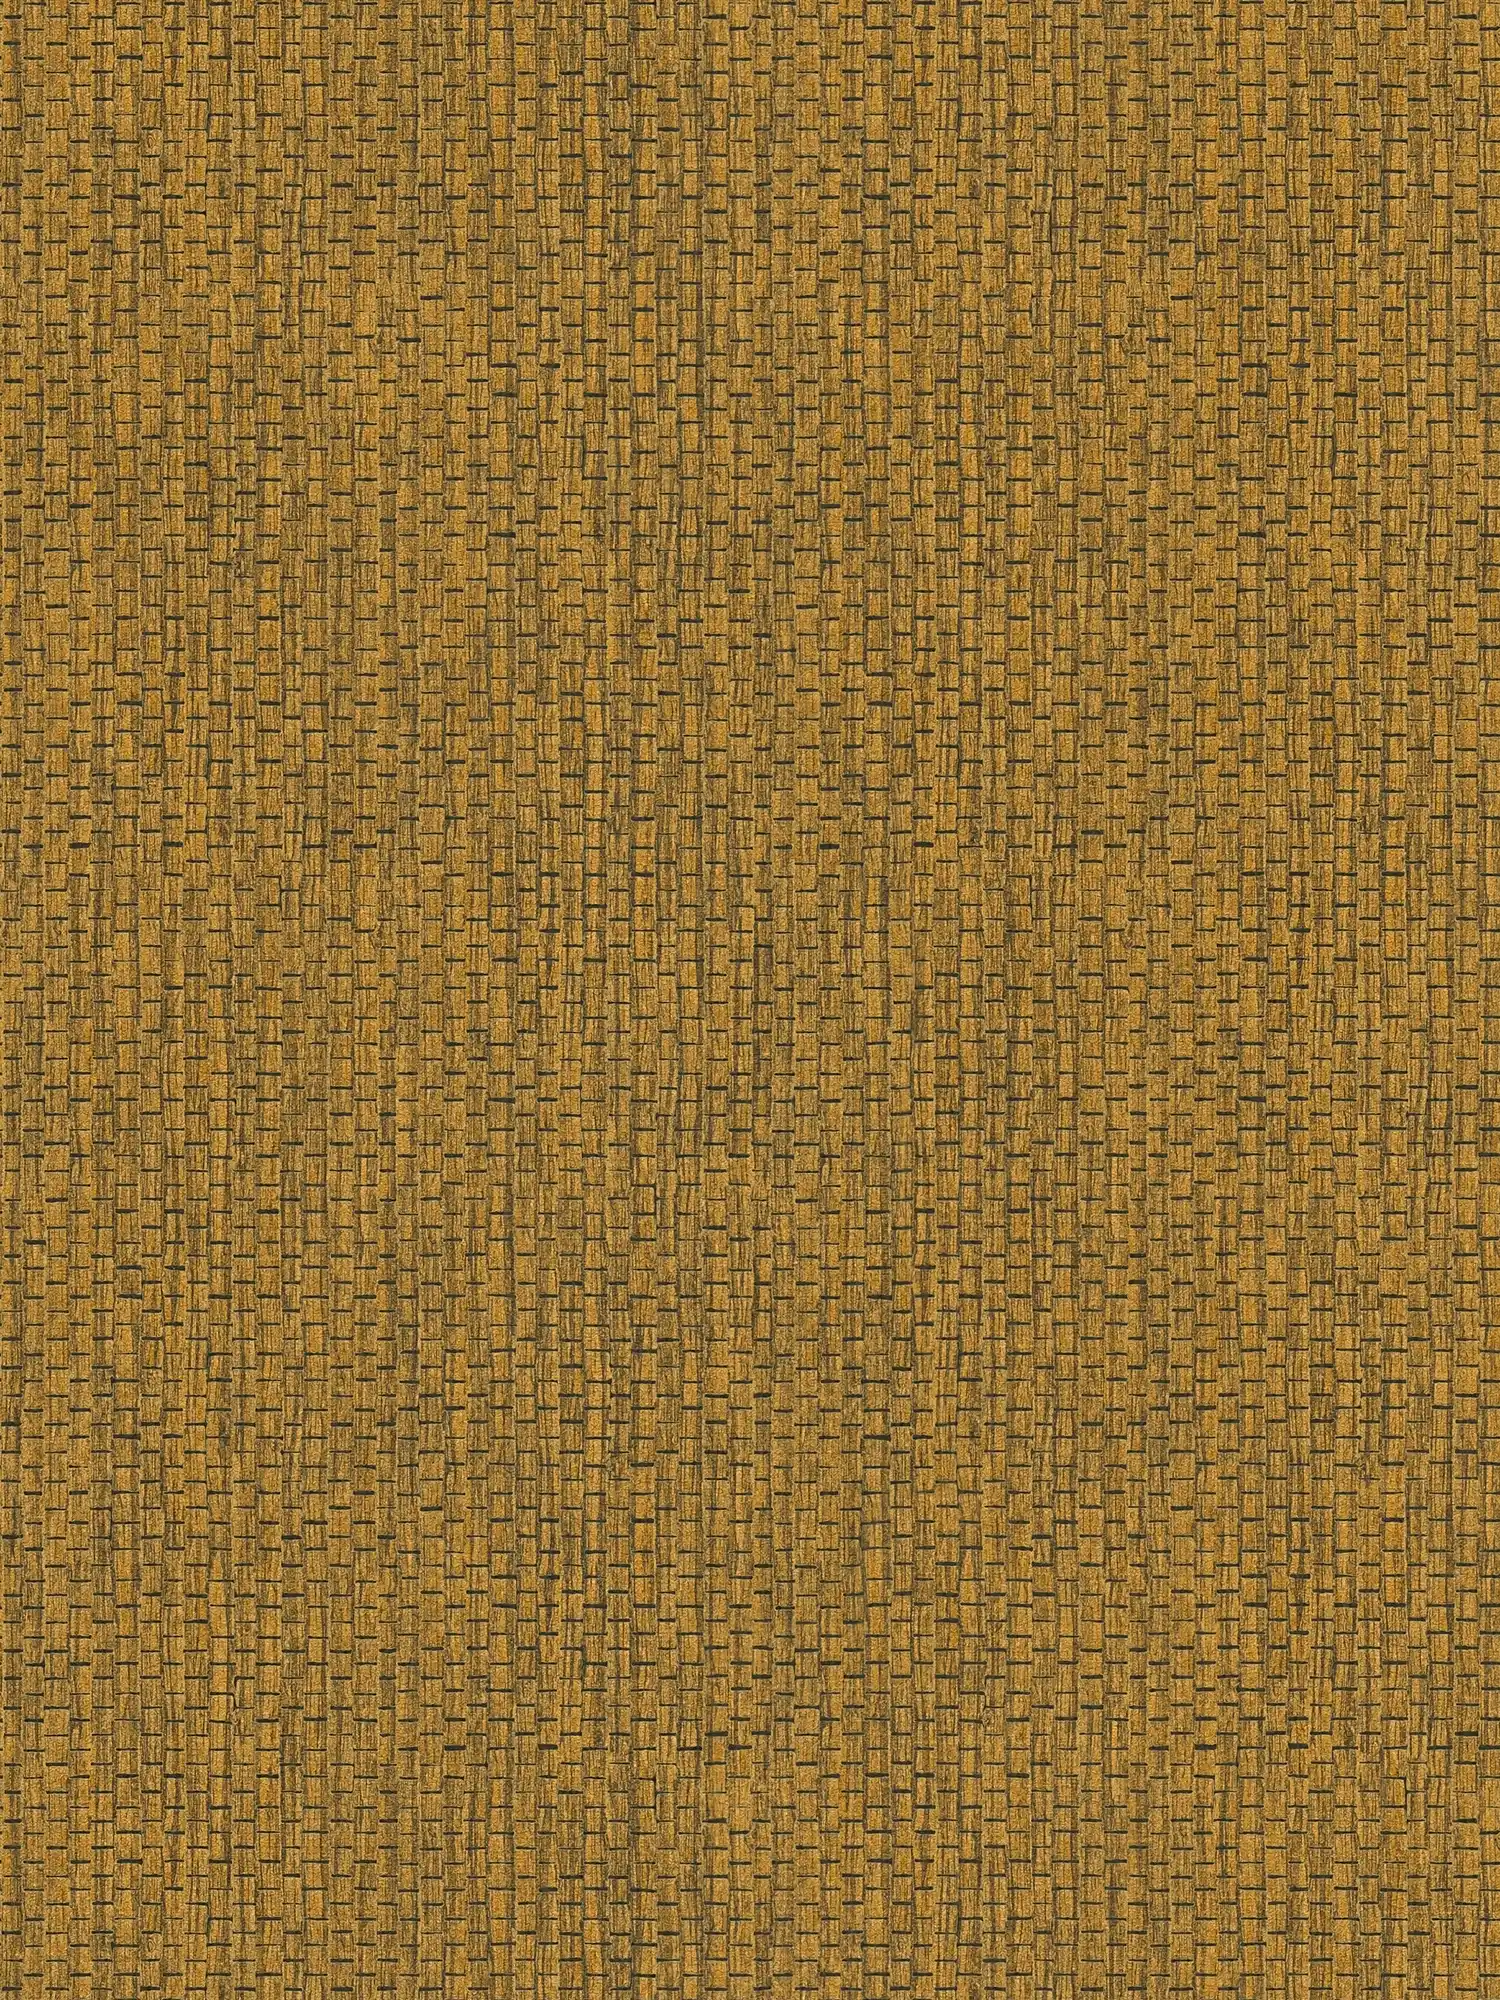 Papier peint avec design de tapis de raphia - marron, jaune
